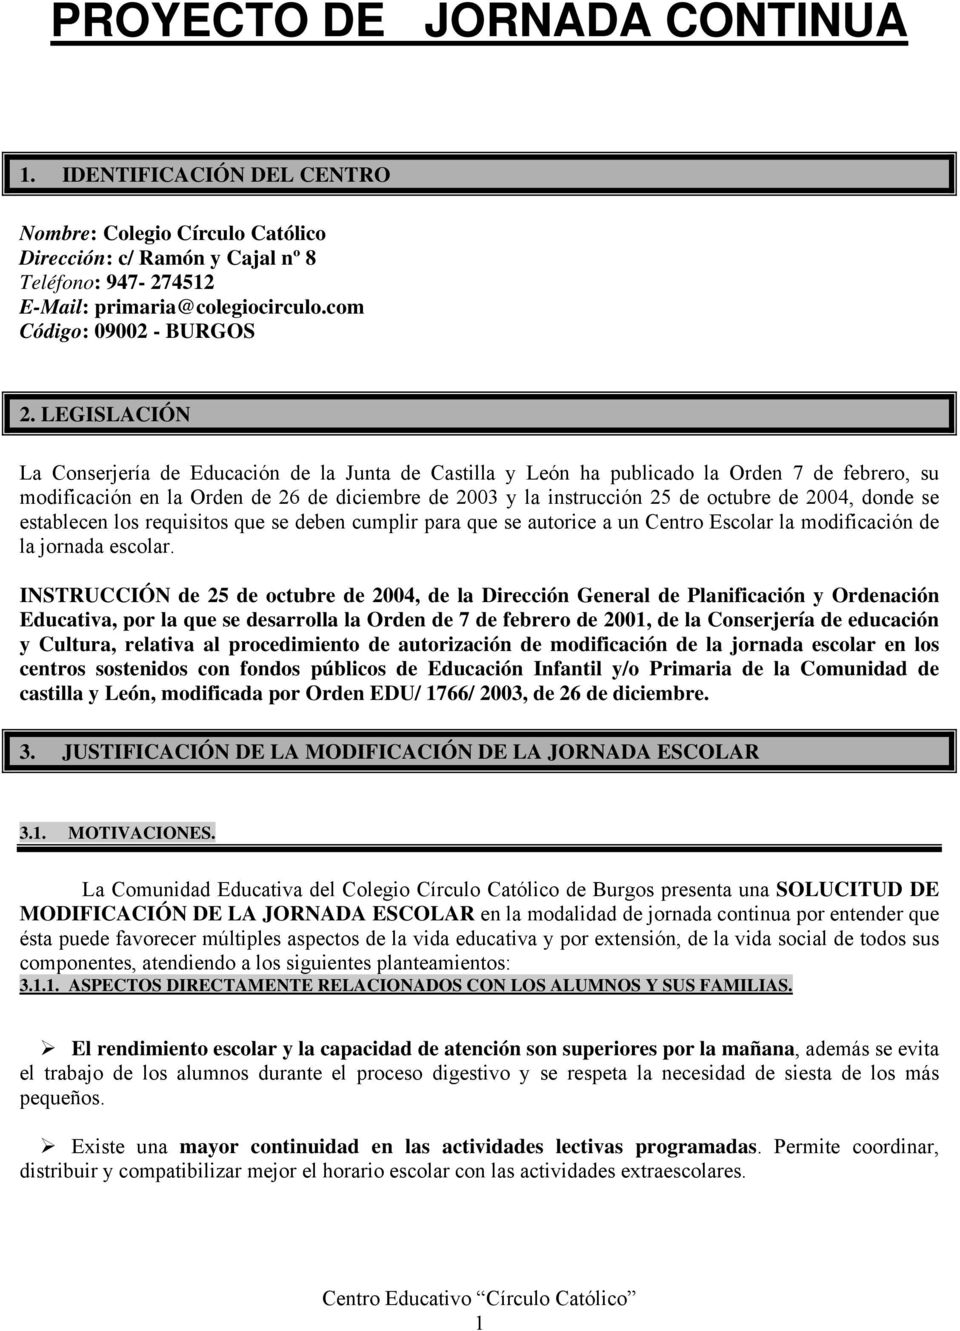 LEGISLACIÓN La Conserjería de Educación de la Junta de Castilla y León ha publicado la Orden 7 de febrero, su modificación en la Orden de 26 de diciembre de 2003 y la instrucción 25 de octubre de